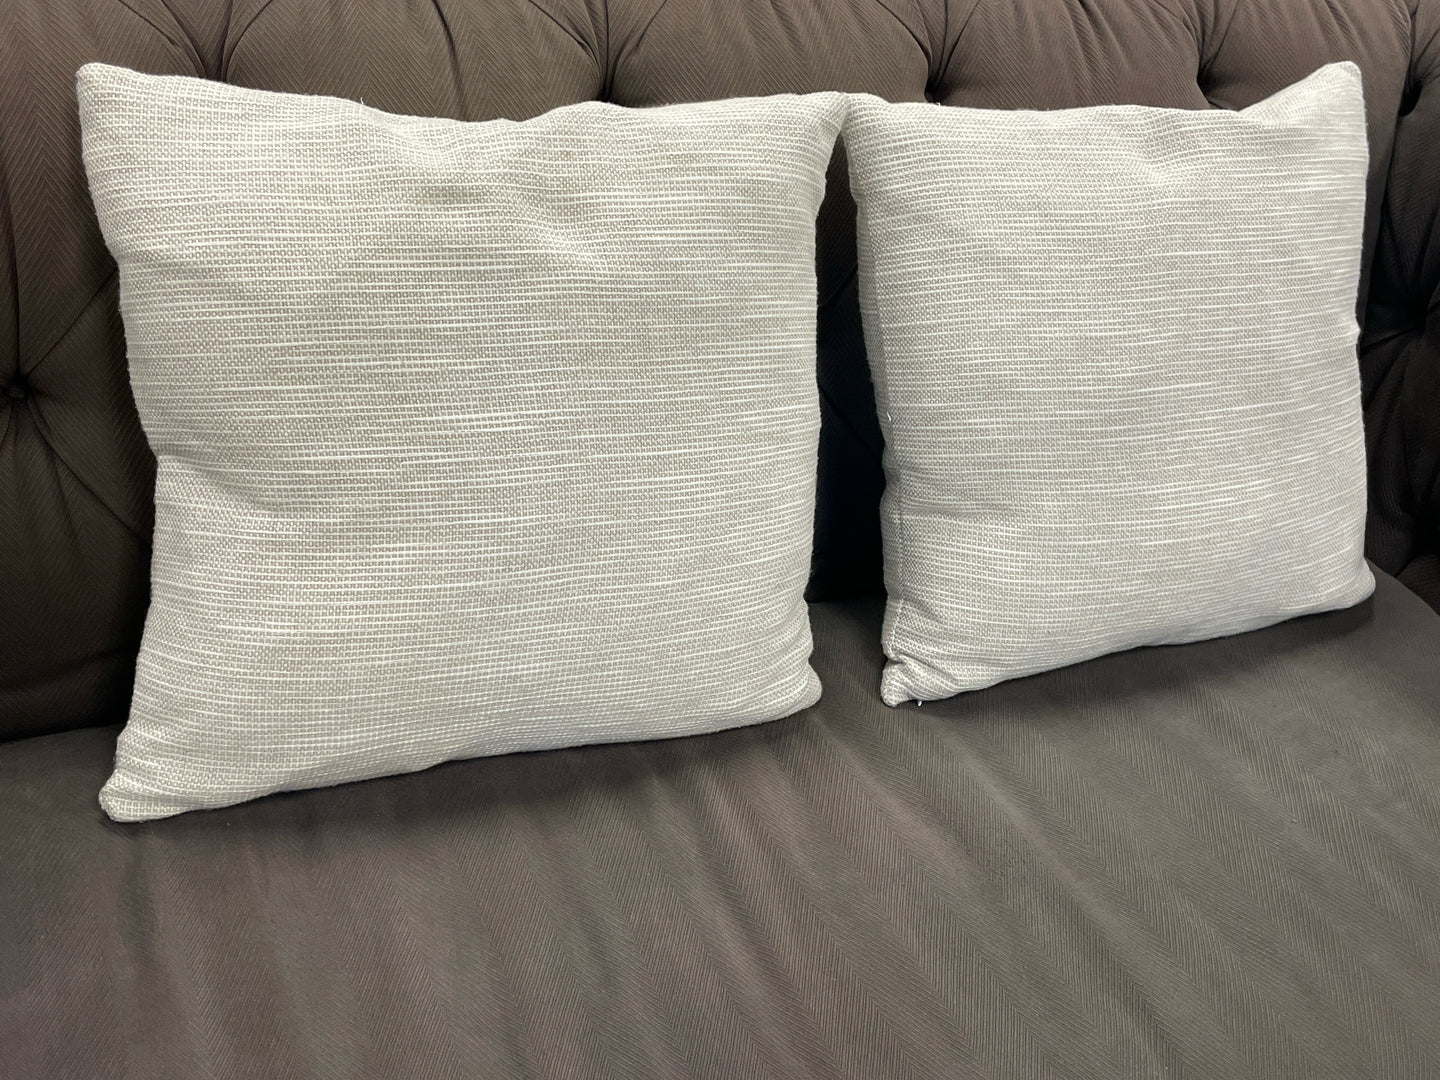 Pair of Neutral Tone  Pillows from Calvin Klein